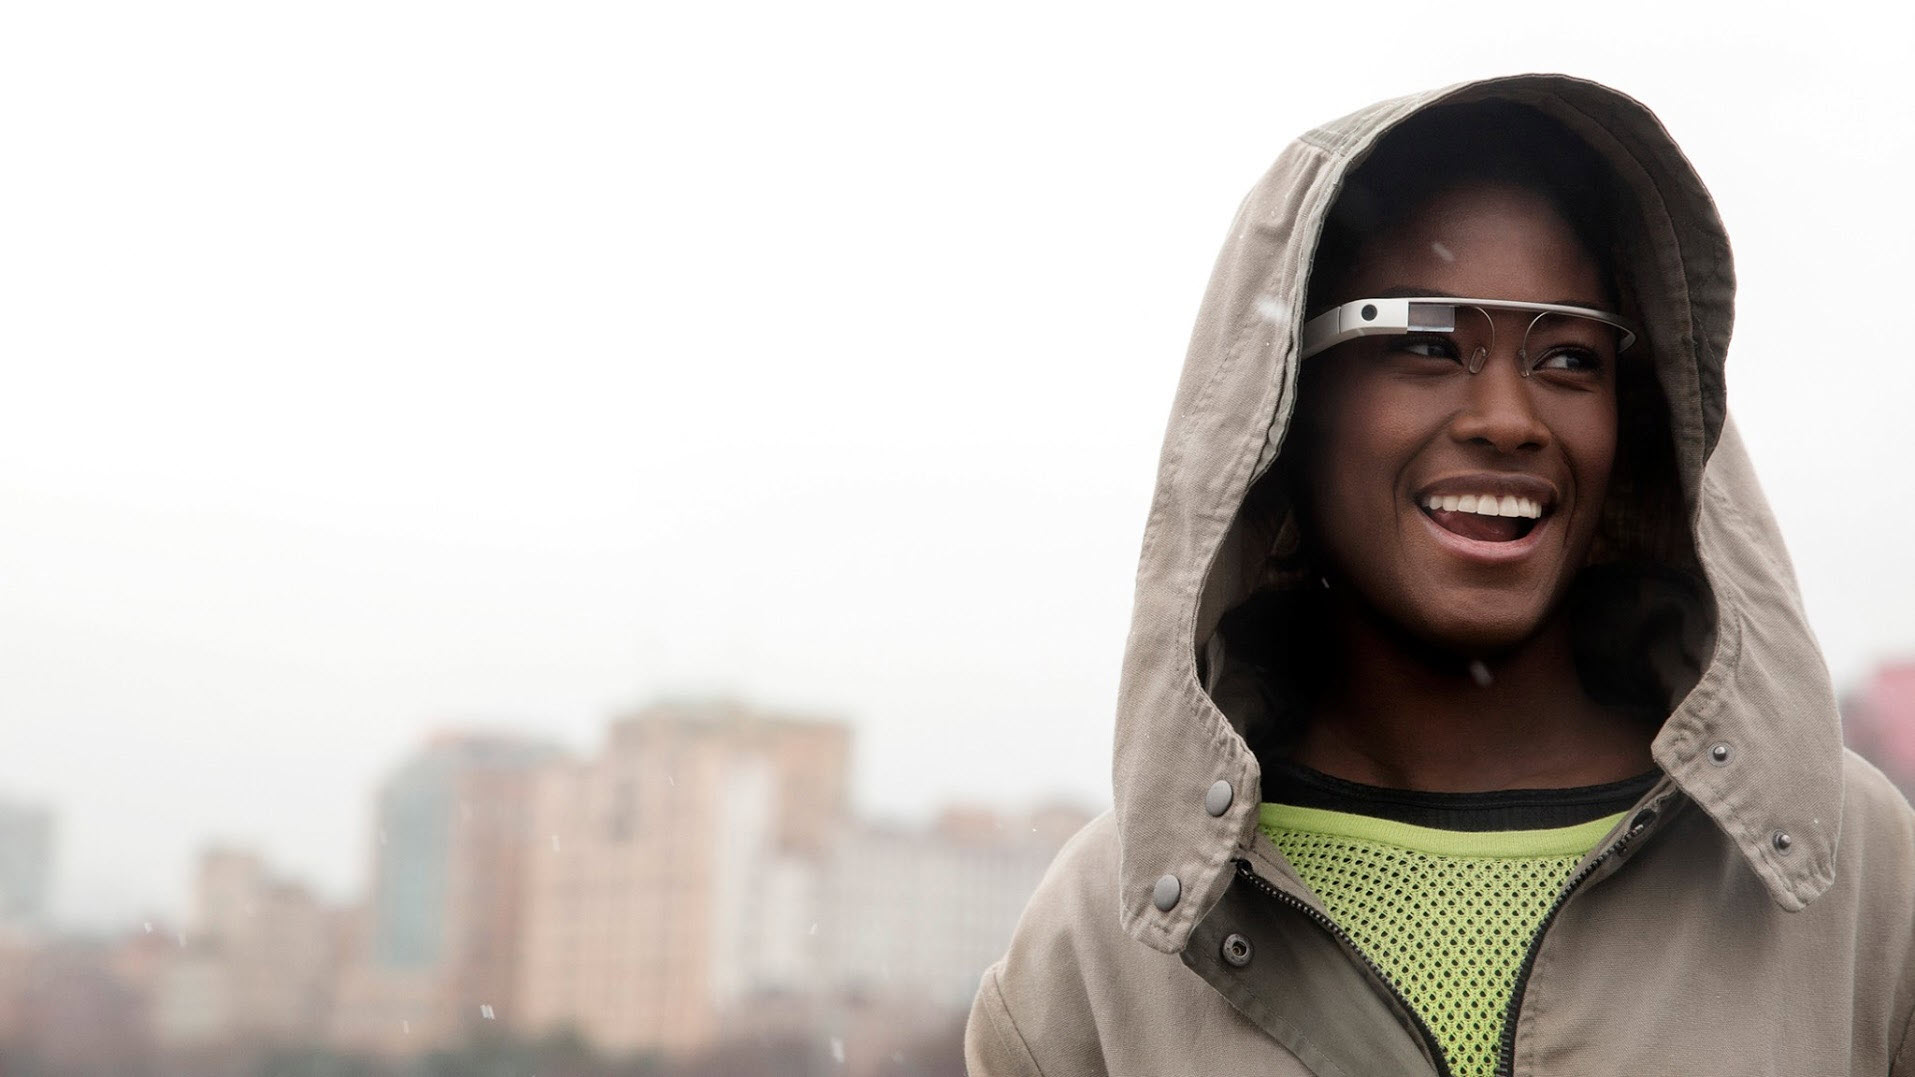 Google Glass sizi garip mi gösteriyor?